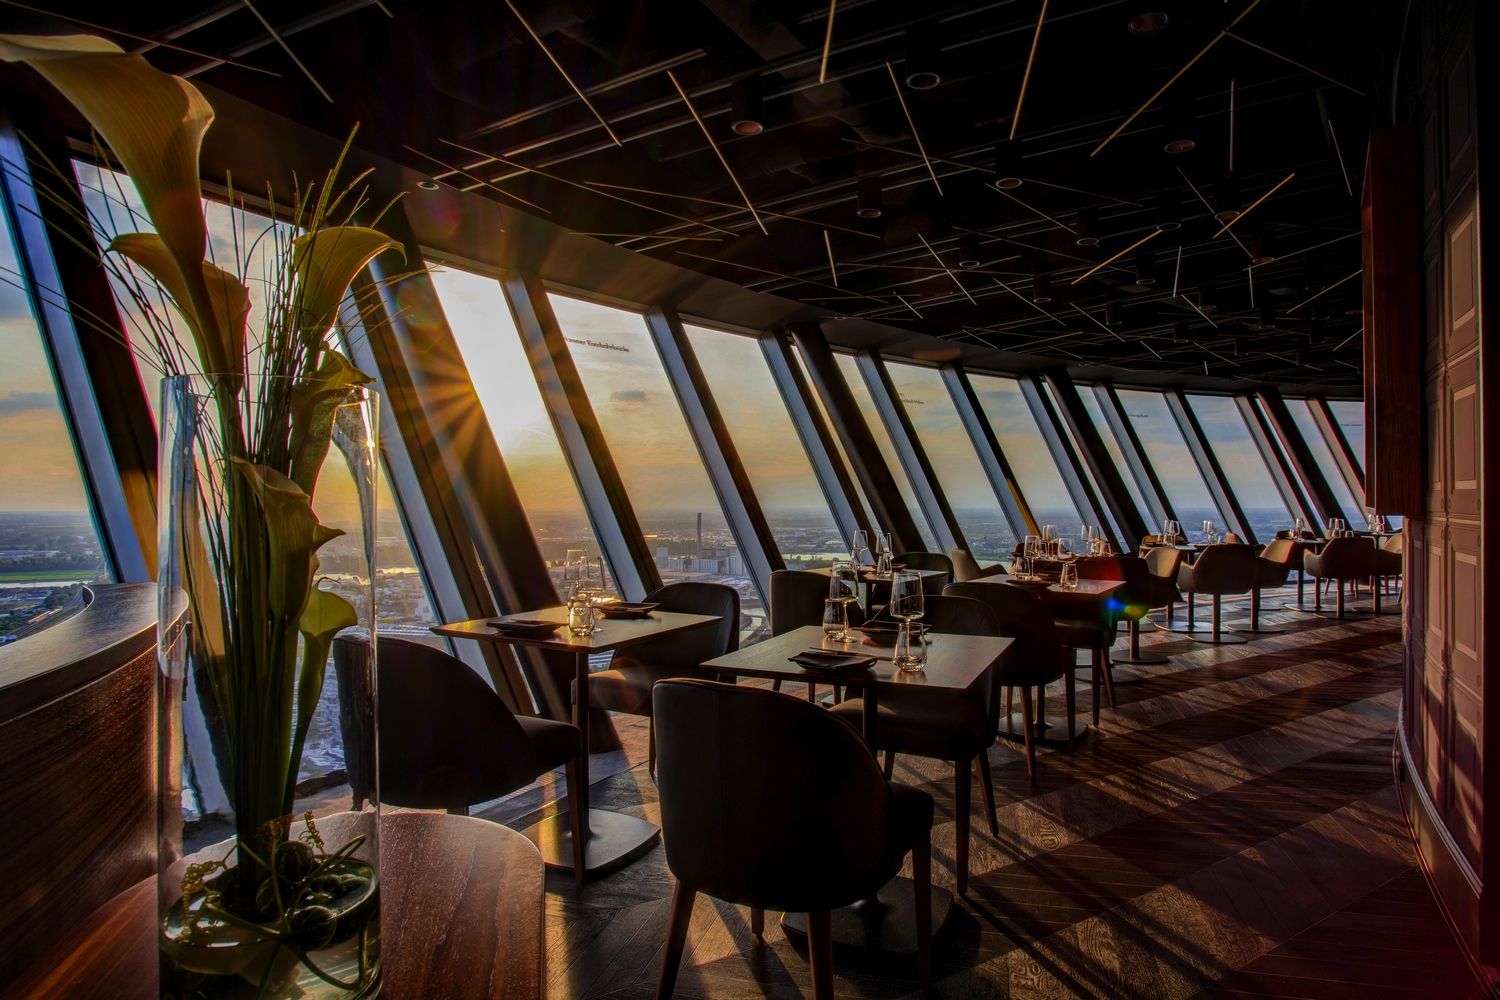 Das Qomo bietet seinen Gästen moderne Kreationen traditioneller japanischer Speisen und Getränke. sowie einen 360 Grad-Panoramablick über die Stadt.